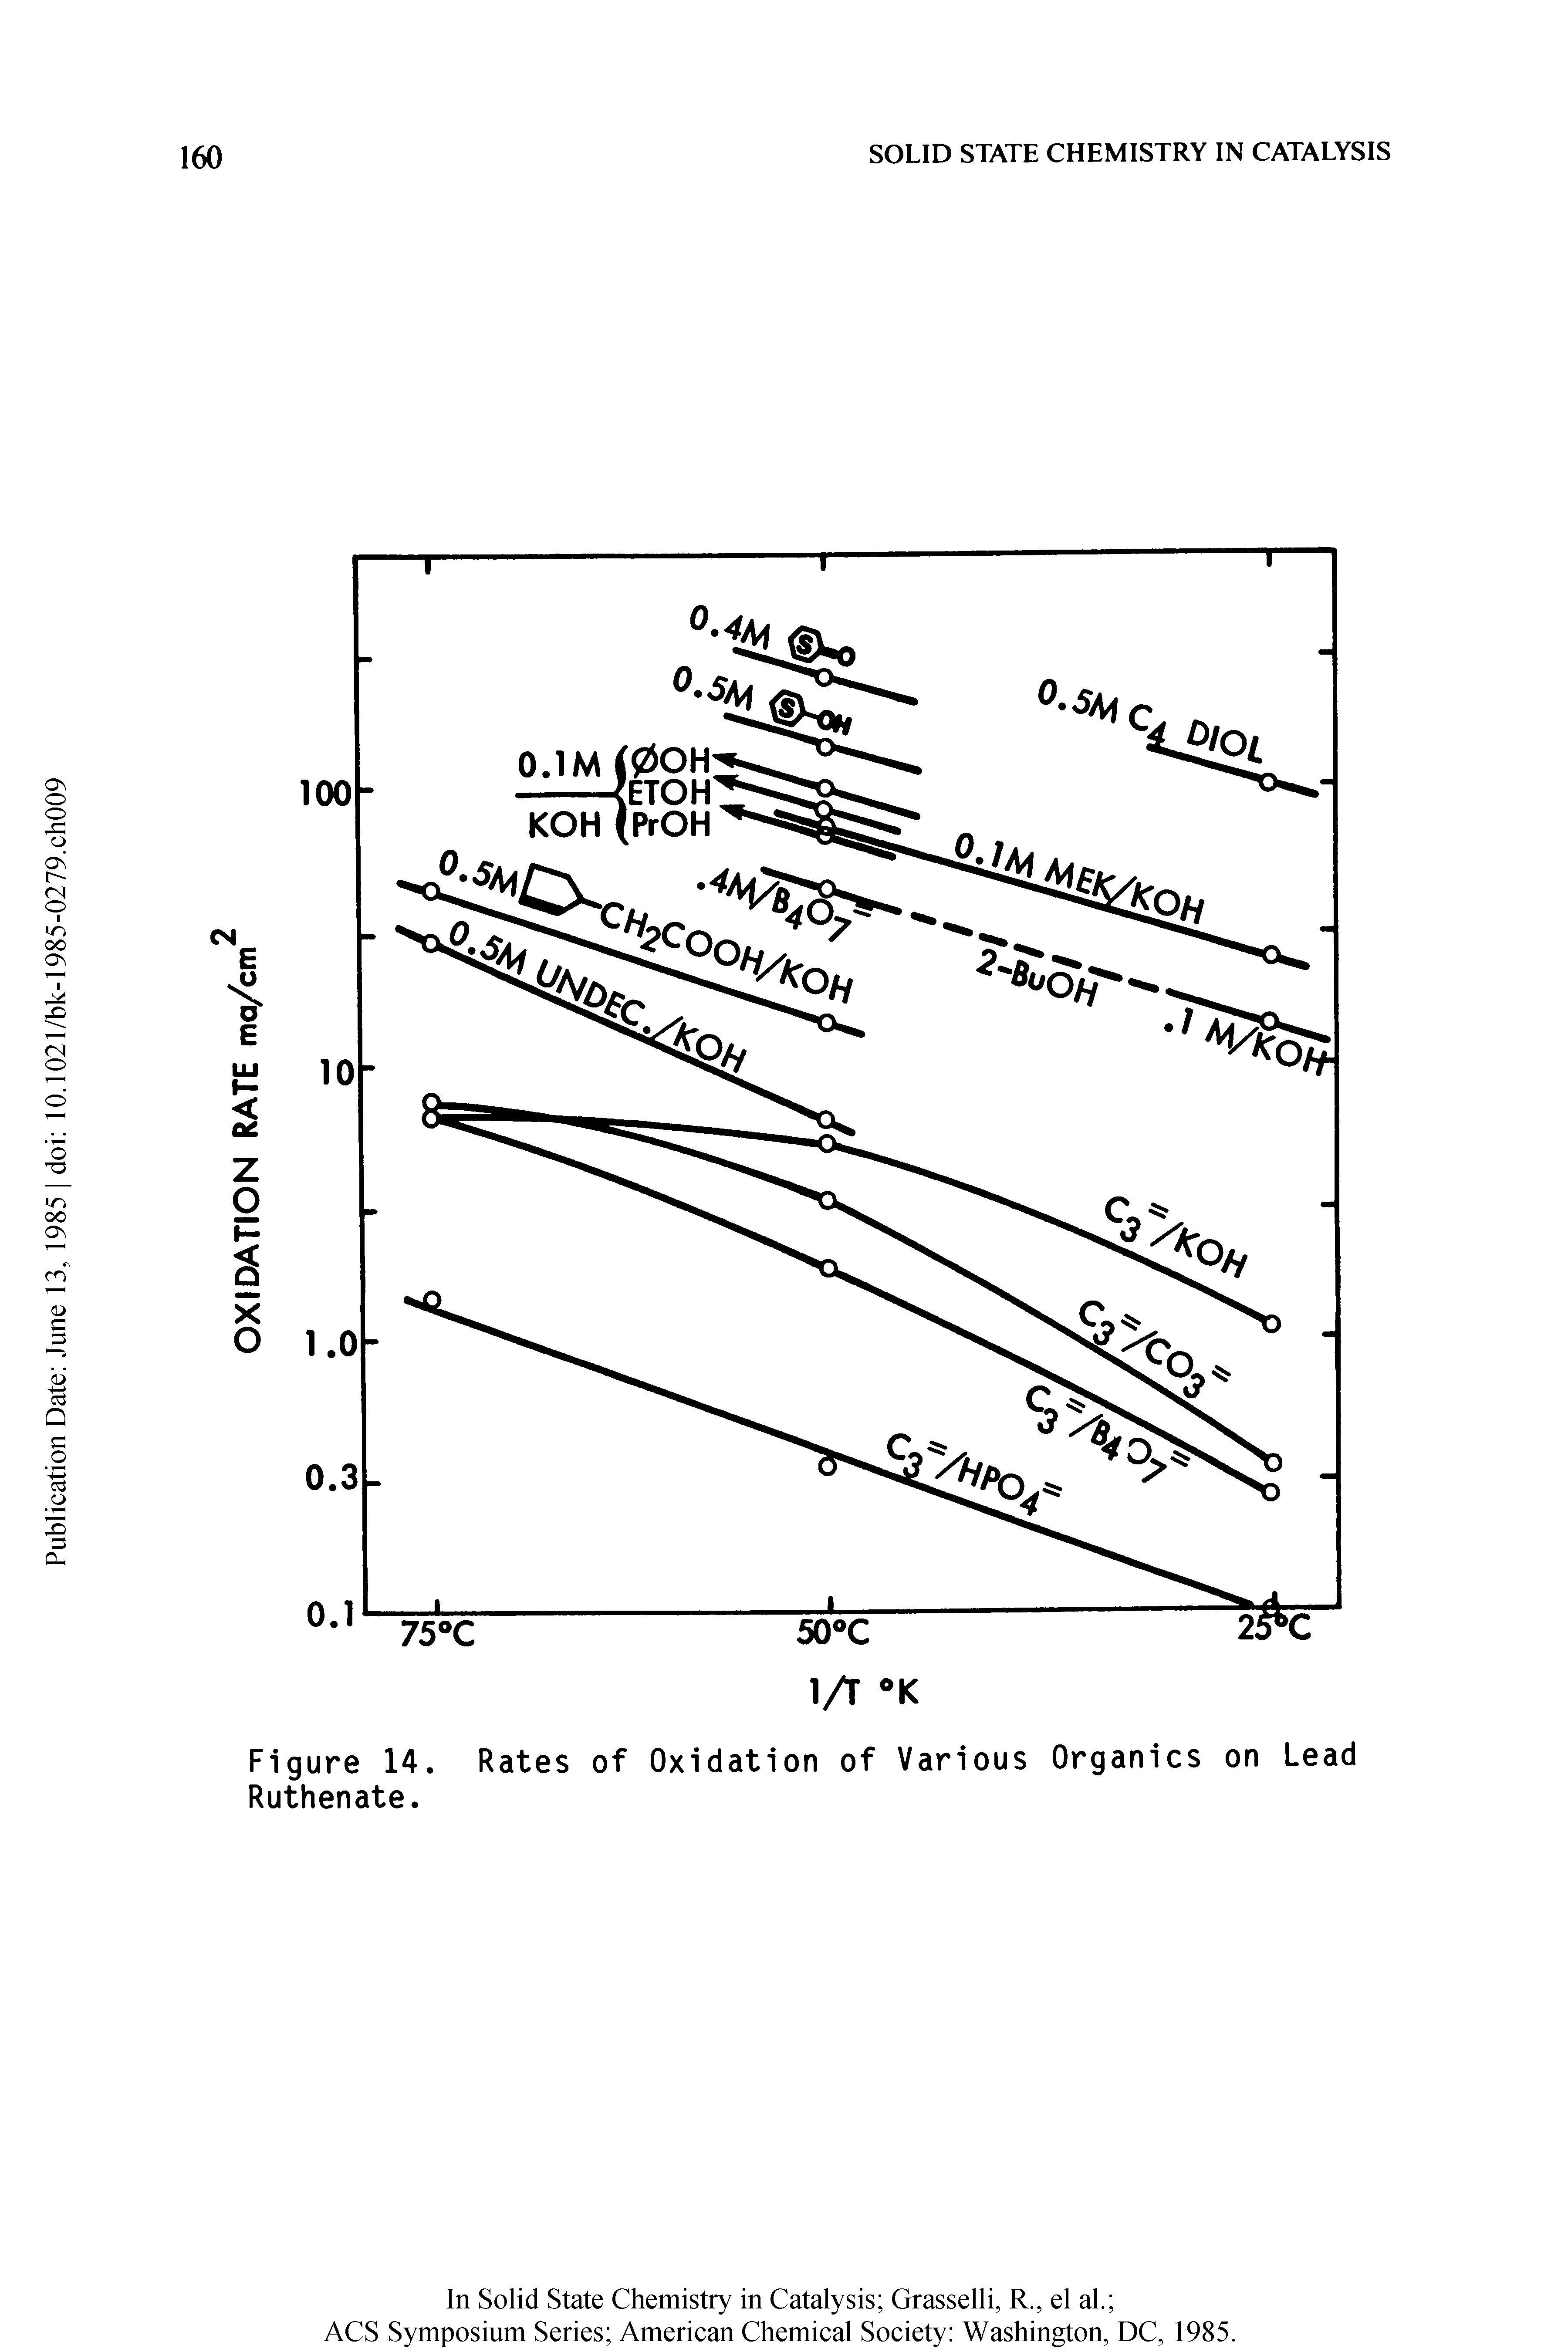 Figure 14. Rates of Oxidation of Various Organics on Lead Ruthenate.